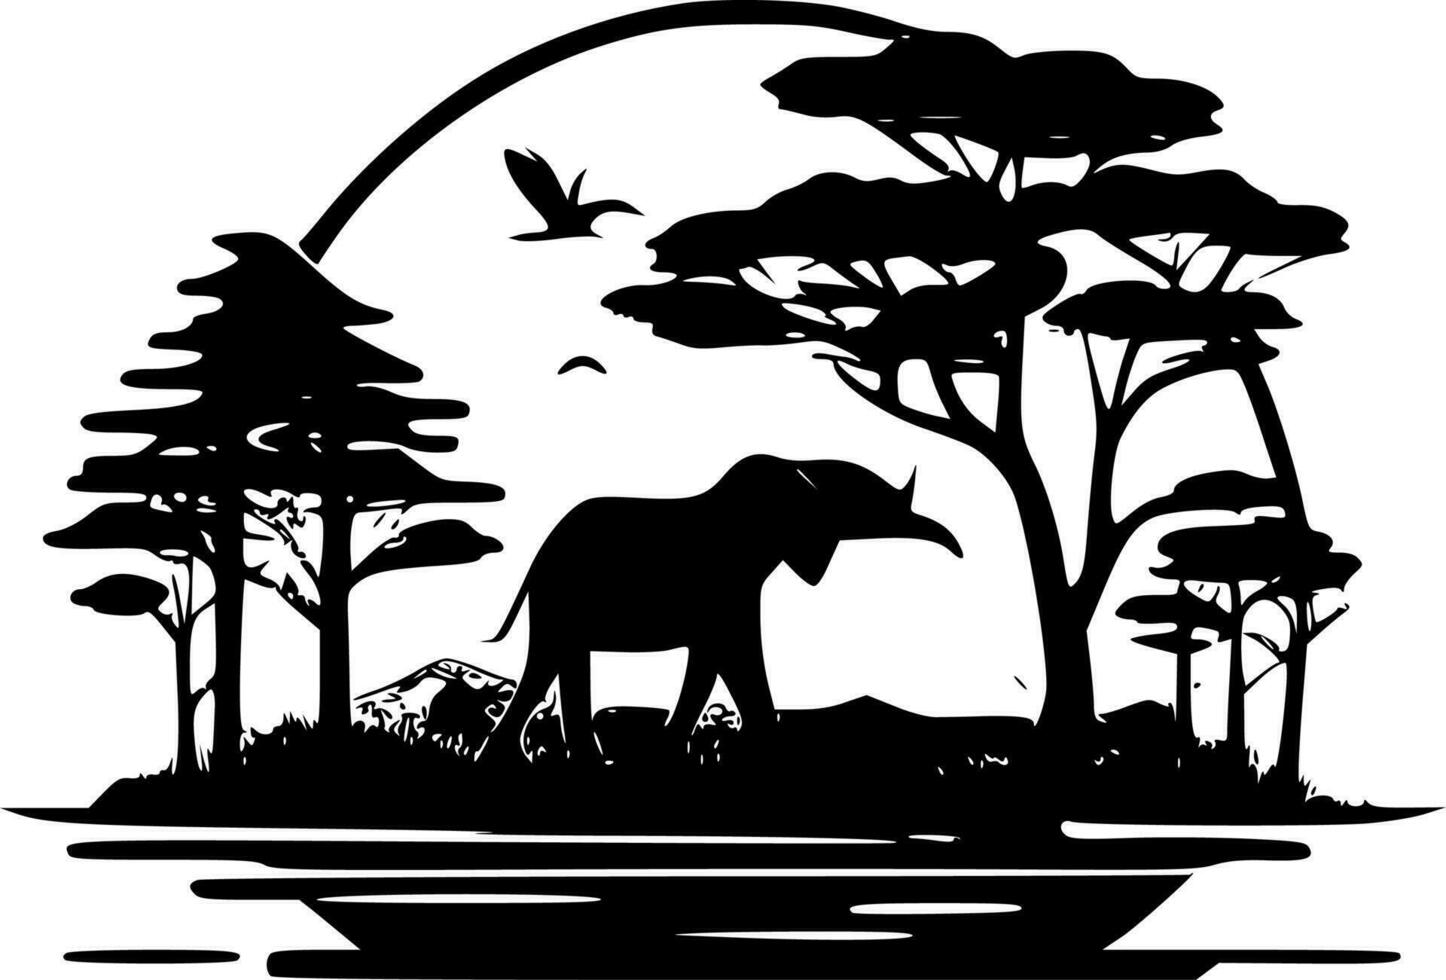 Safari, Minimalist and Simple Silhouette - Vector illustration